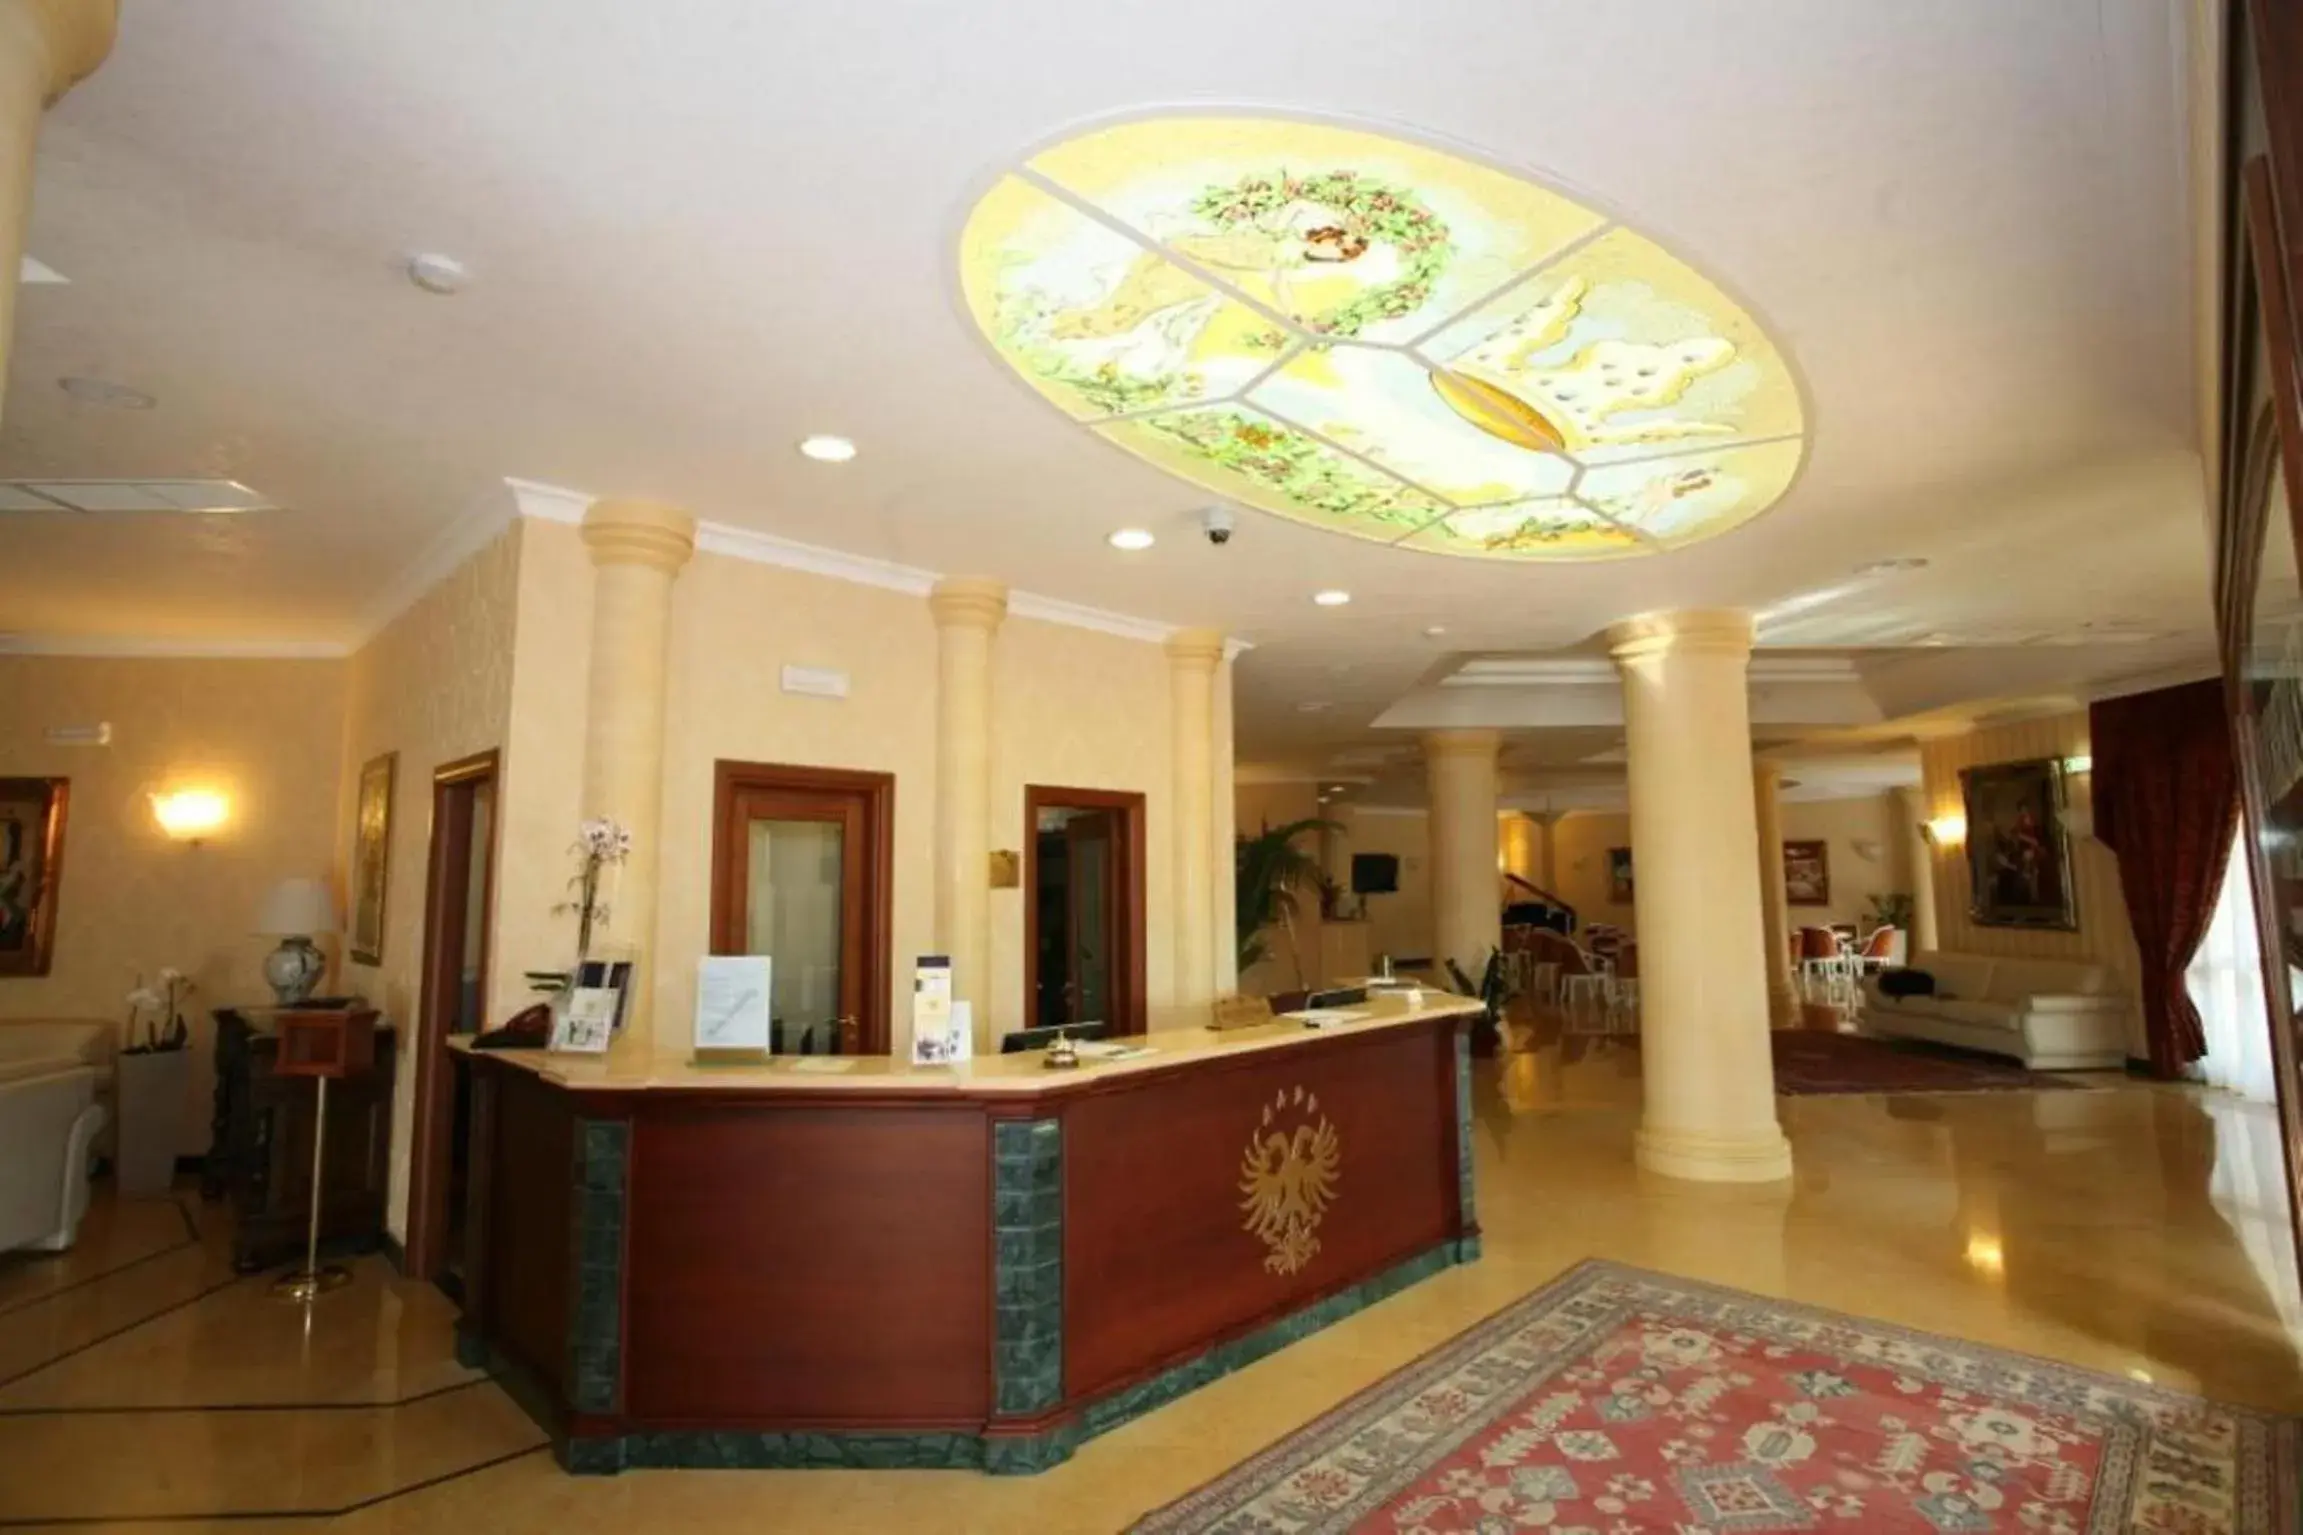 Lounge or bar, Lobby/Reception in Hotel Federico II